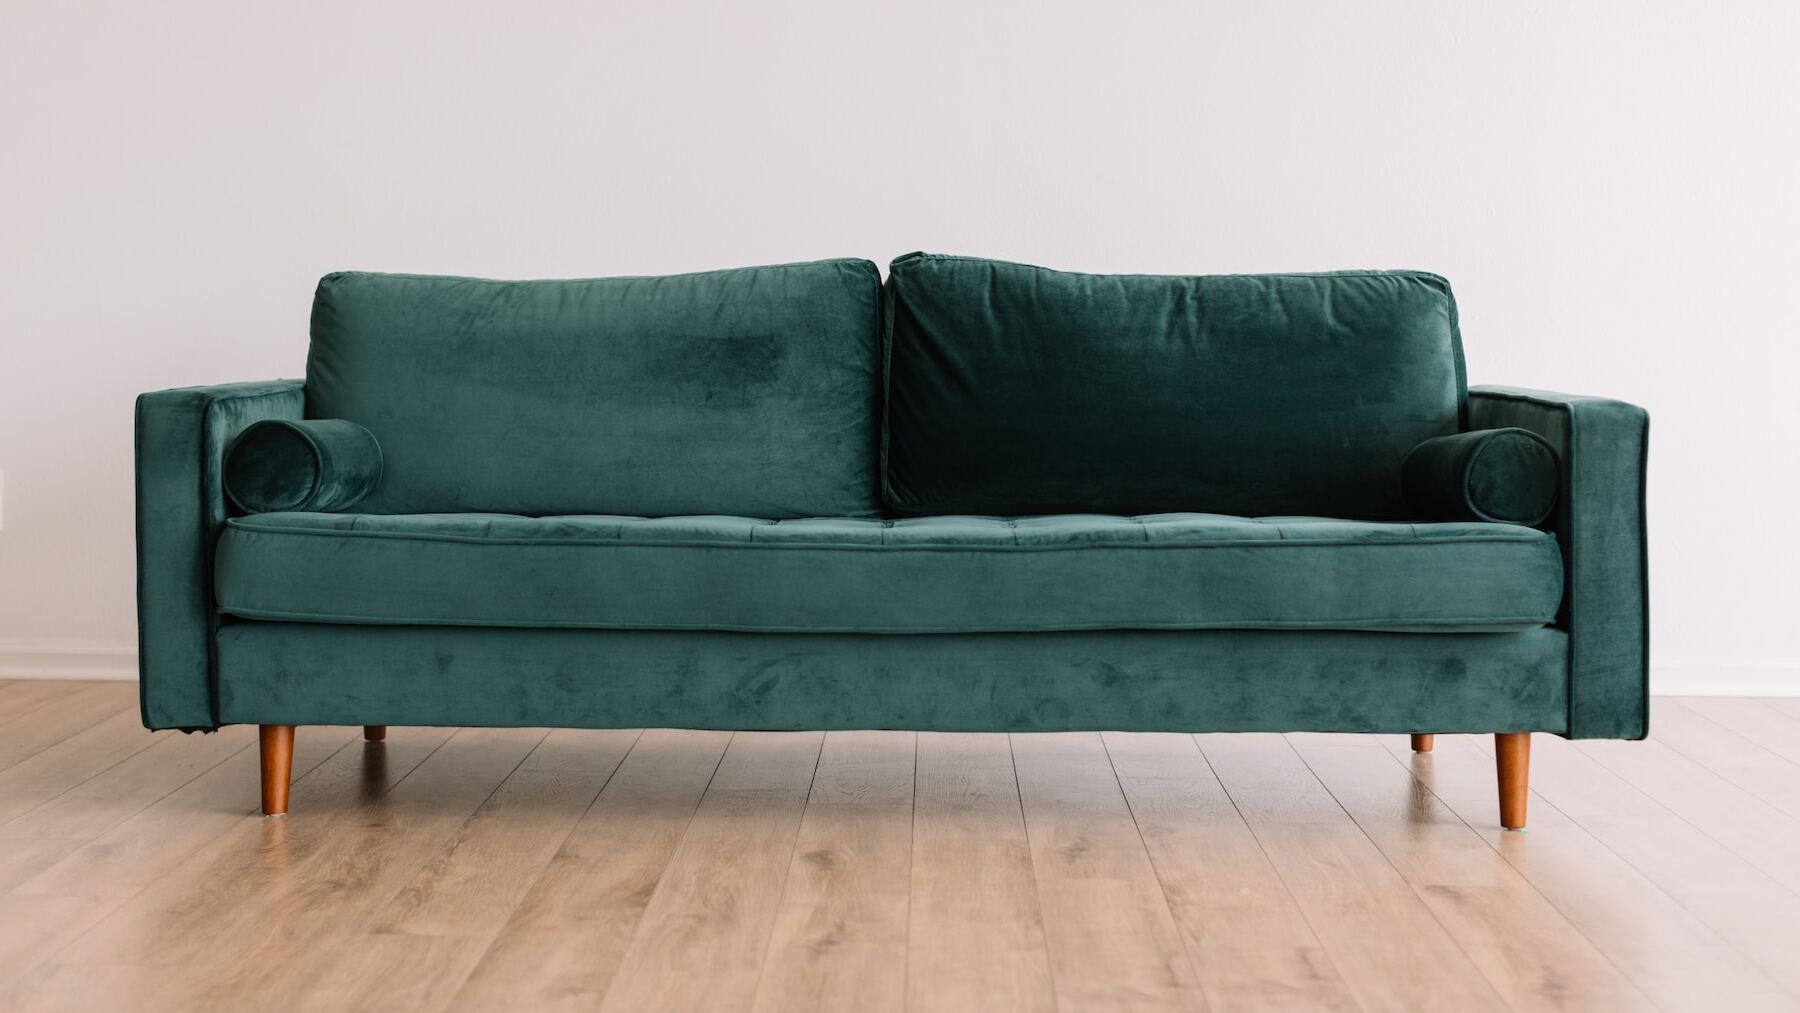 Cómo limpiar la tapicería del sofá: trucos efectivos